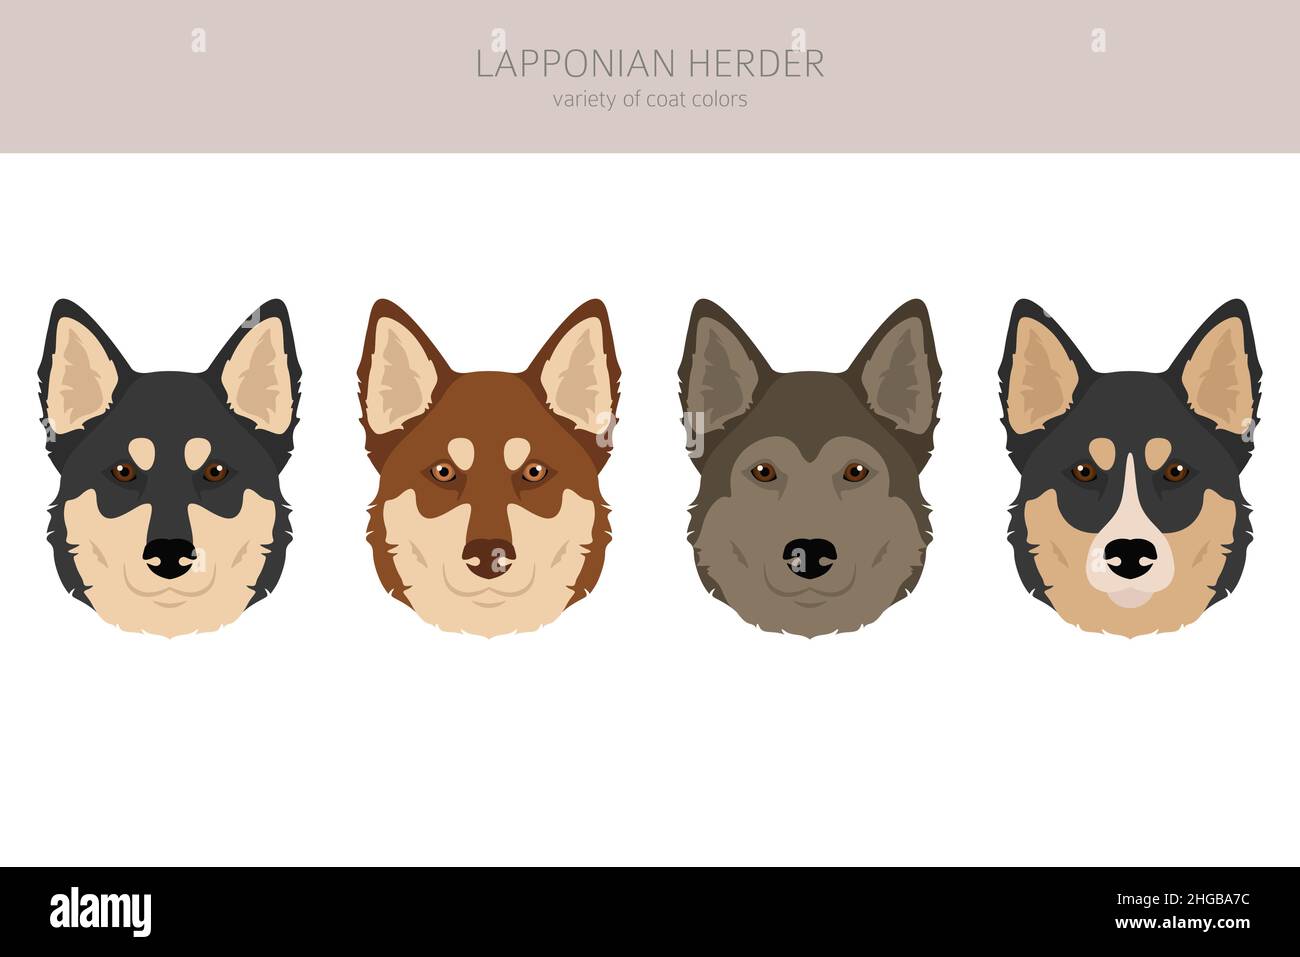 Lapponian Herder Clipart. Pose diverse, colori del cappotto impostati. Illustrazione vettoriale Illustrazione Vettoriale